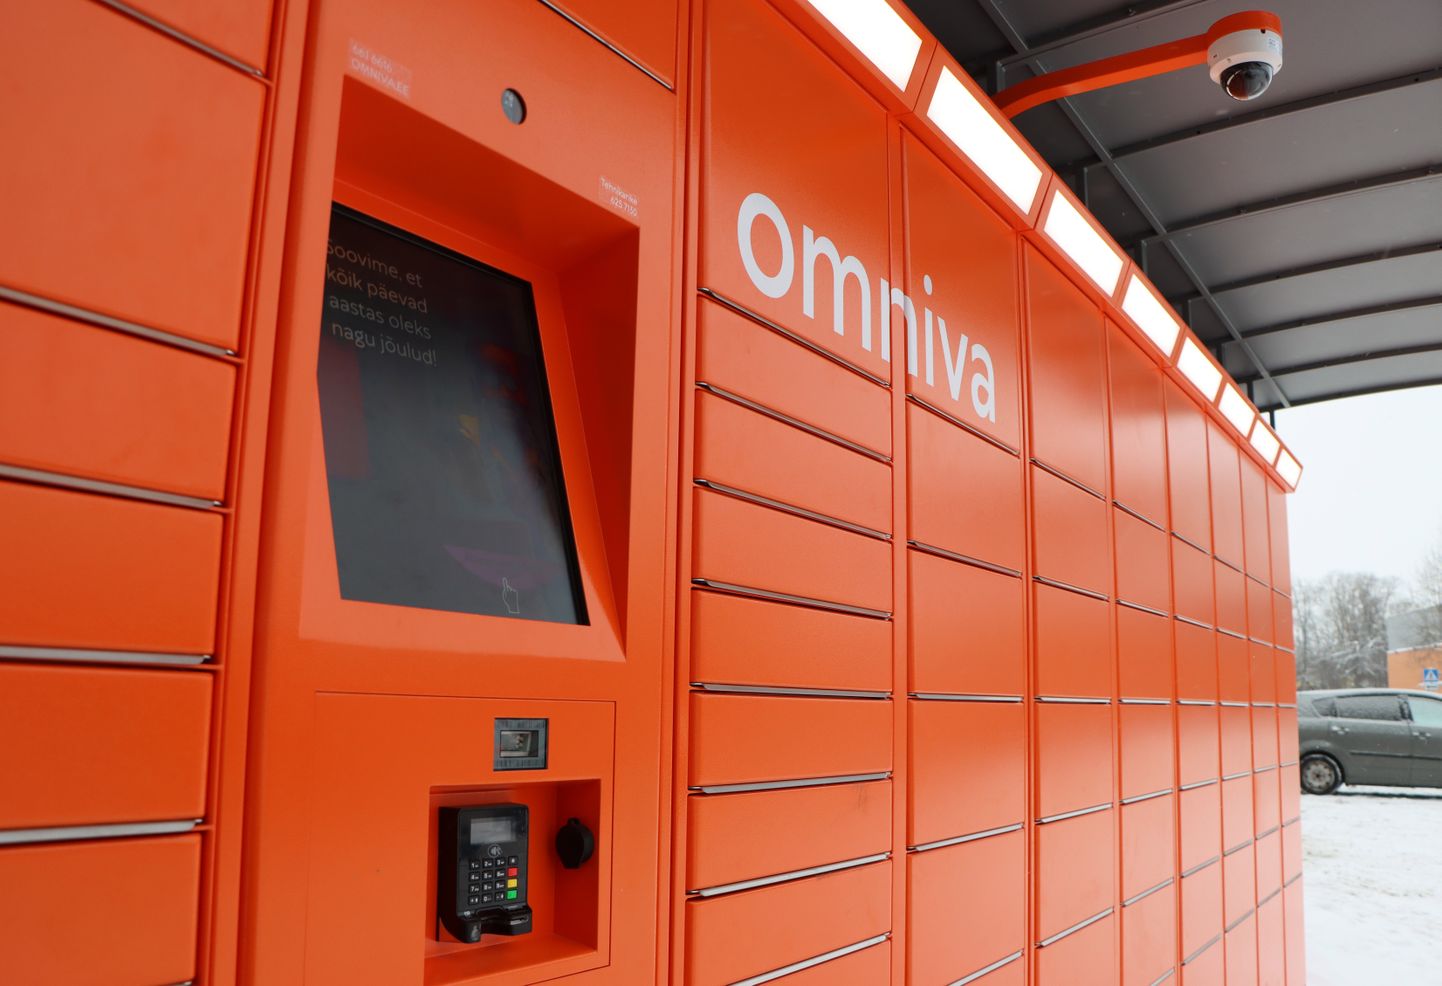 Посылочный автомат Omniva (иллюстративное фото).